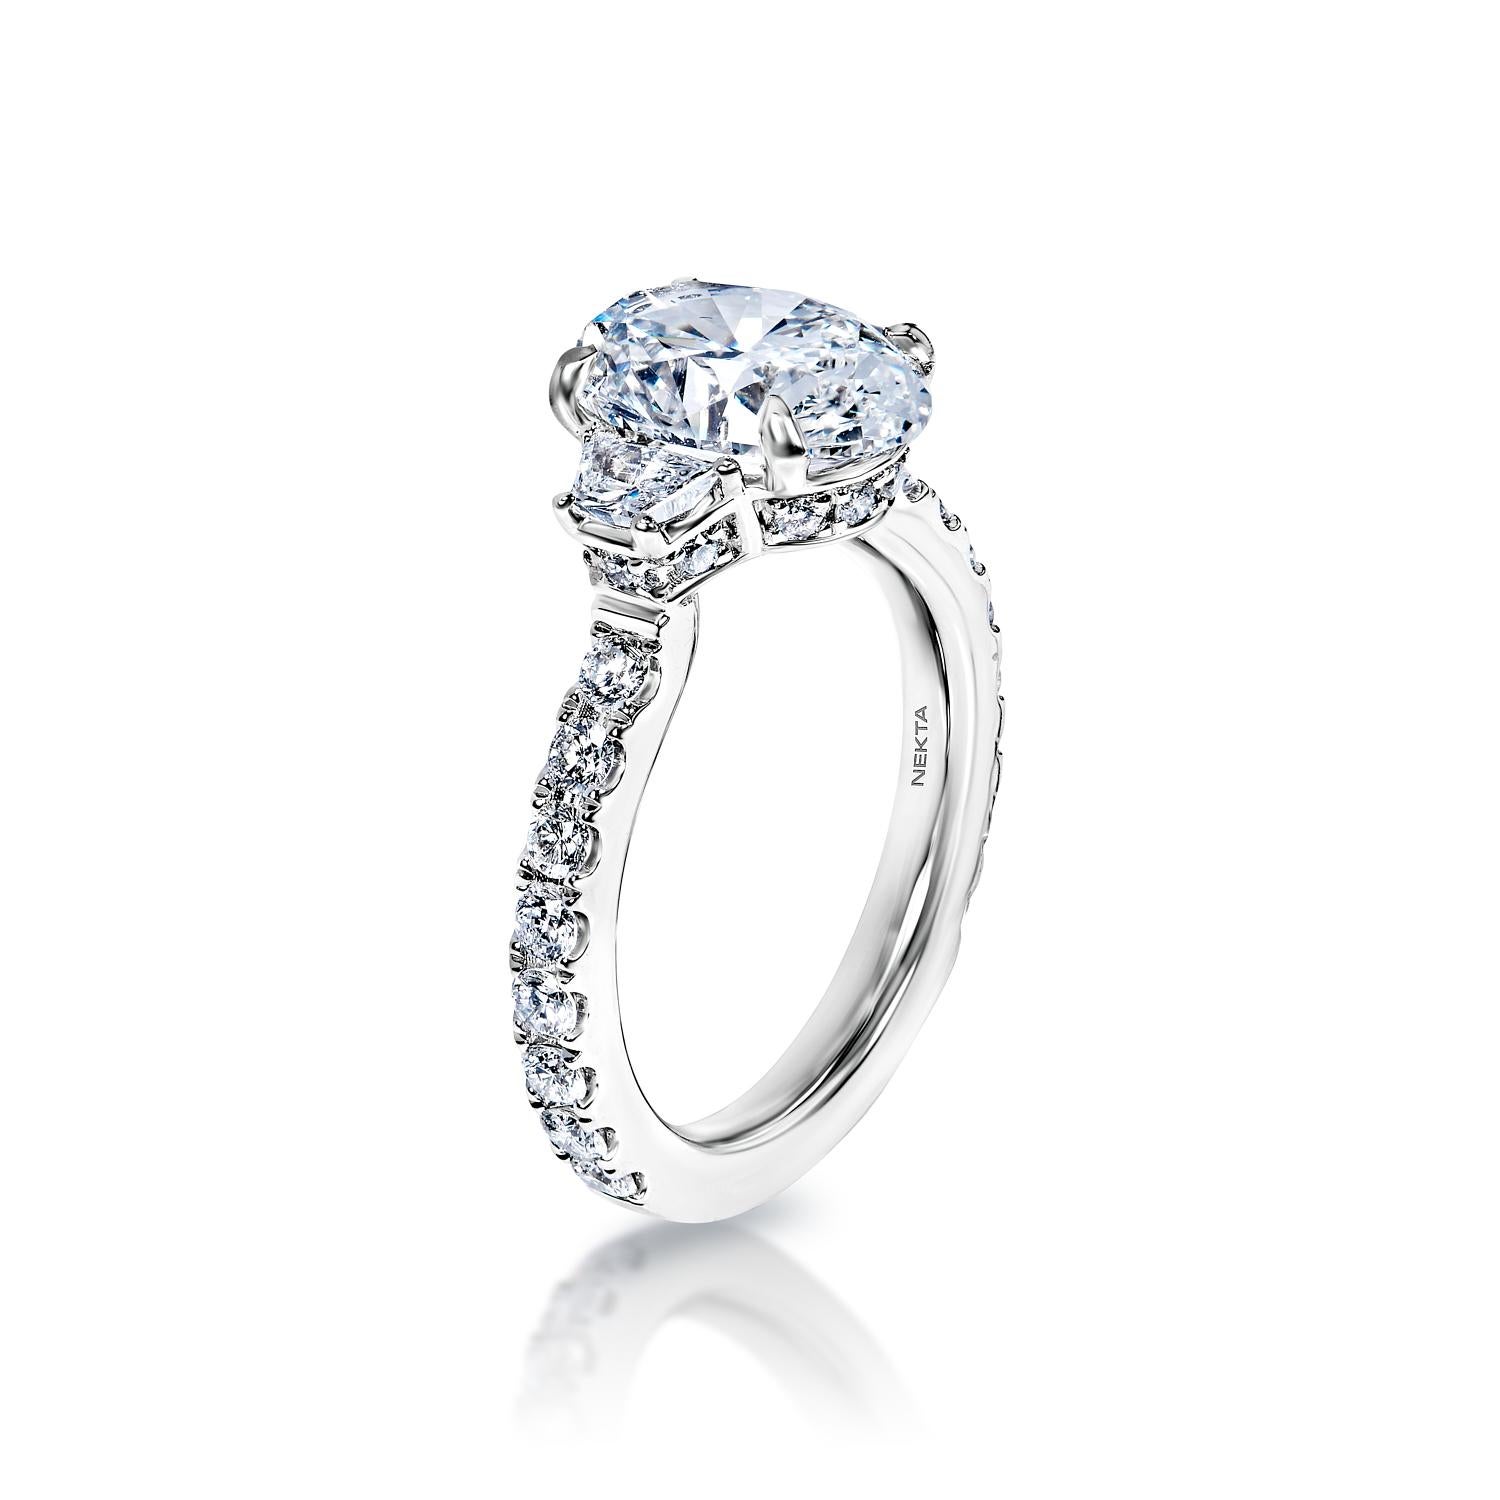 4 carat oval cut diamond ring